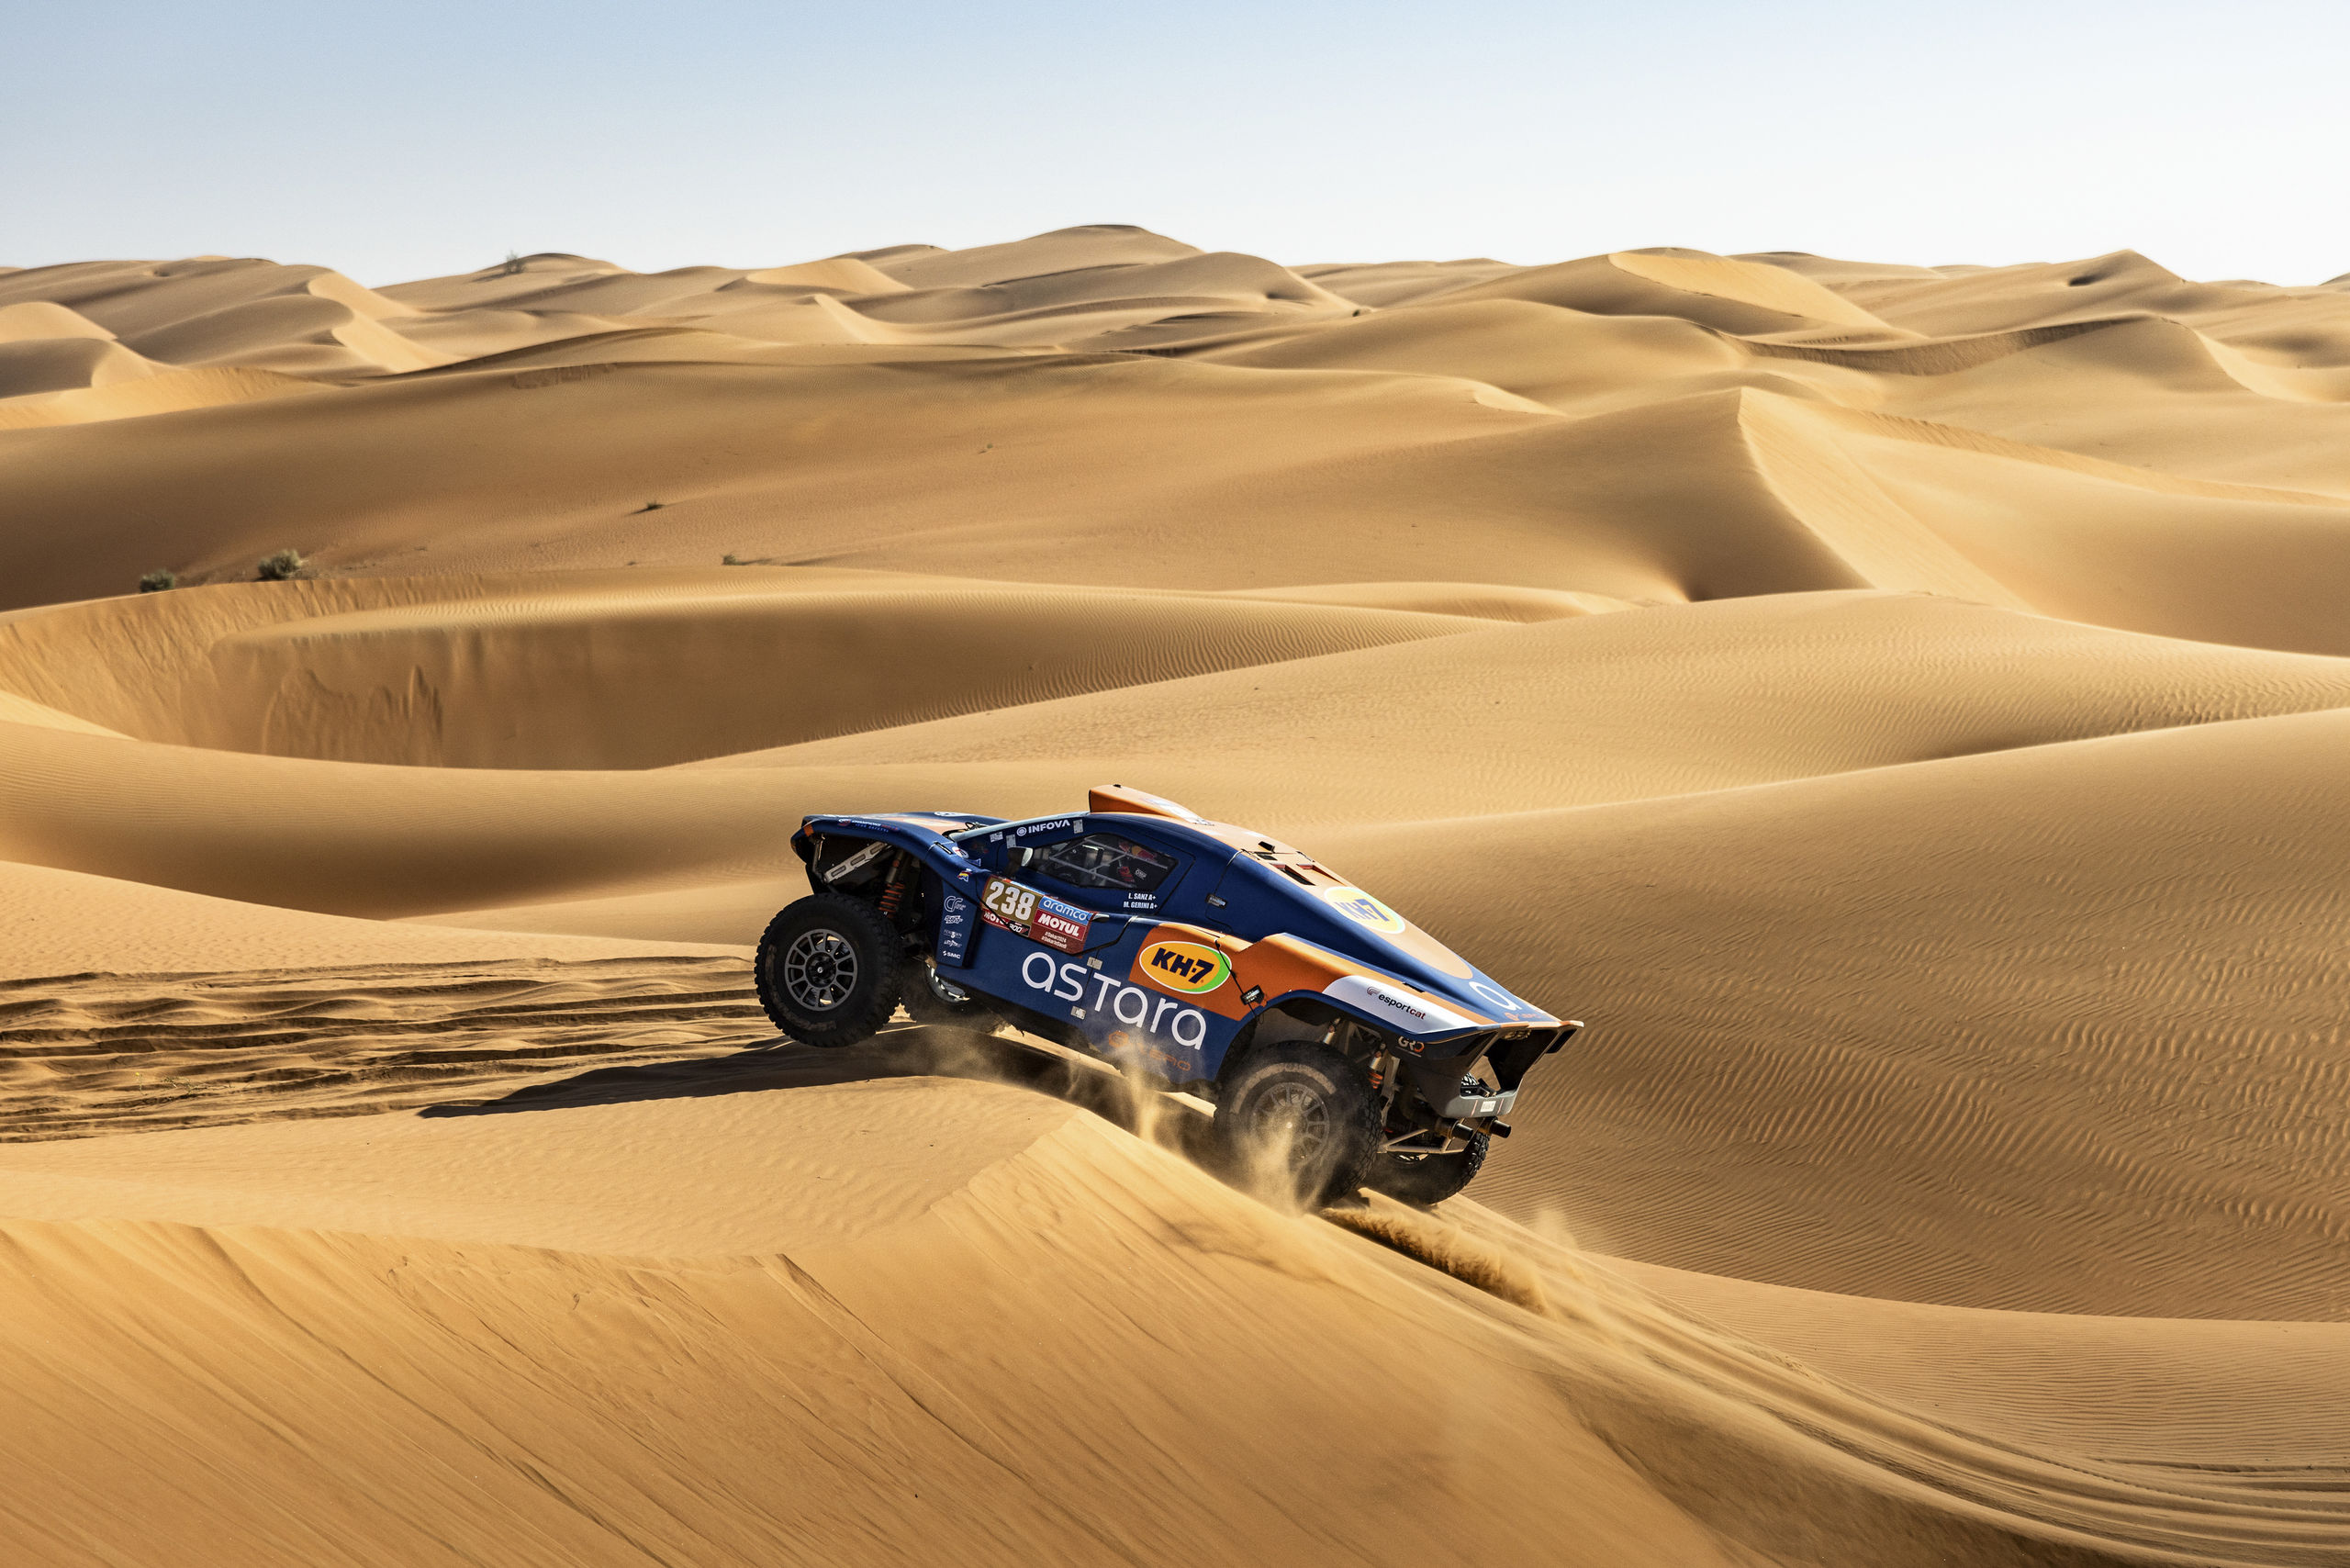 Carlos Sainz salva un mal día y sigue como líder destacado del rally Dakar